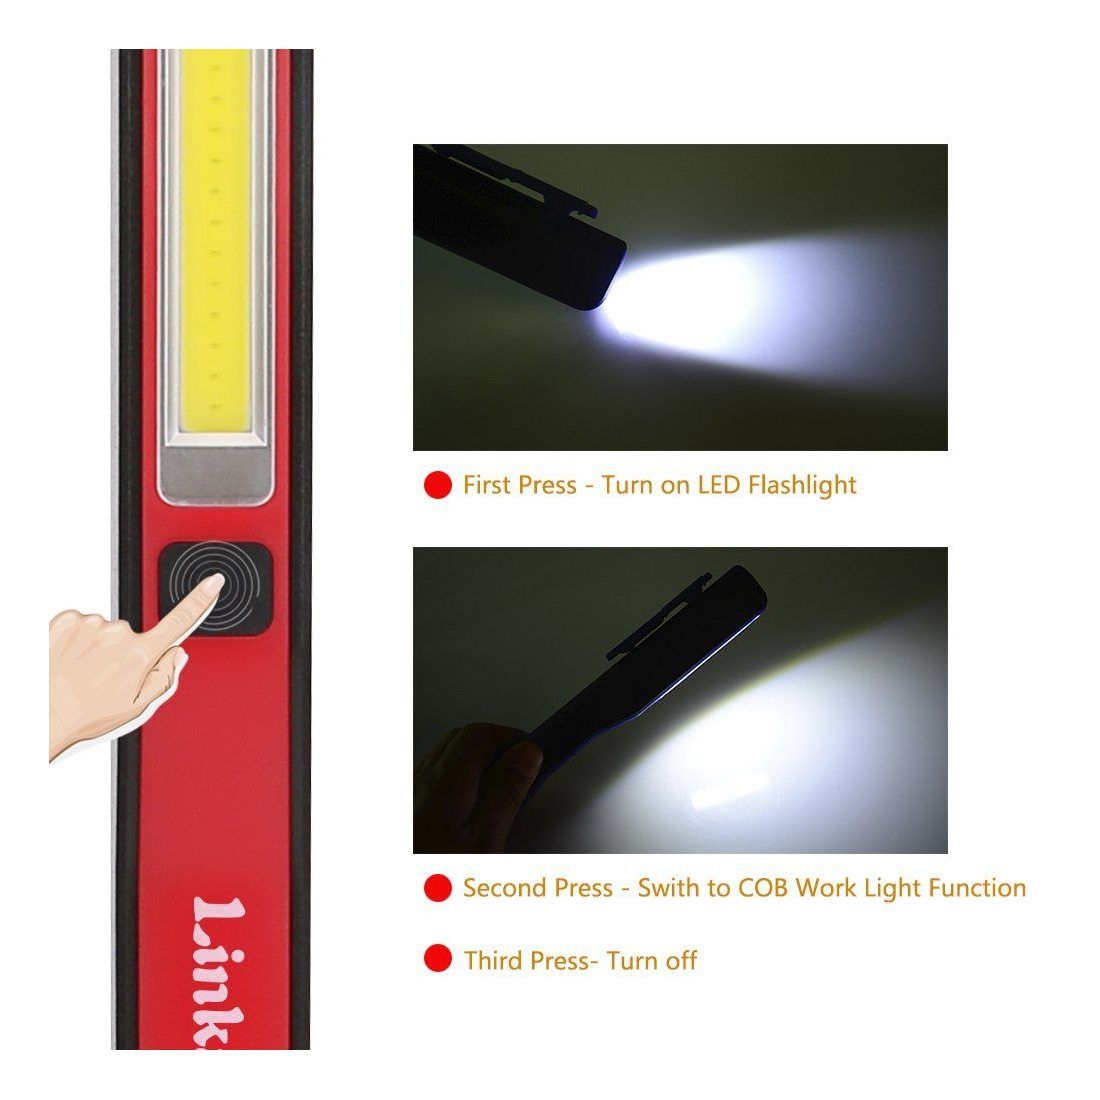 Linkax Lampe de Travail USB Rechargeable Lampe Inspection COB Torche Lampe de poche LED Ultra Puissante Camping Lampe pour Auto Garage Atelier bricolage avec clip magnétique 